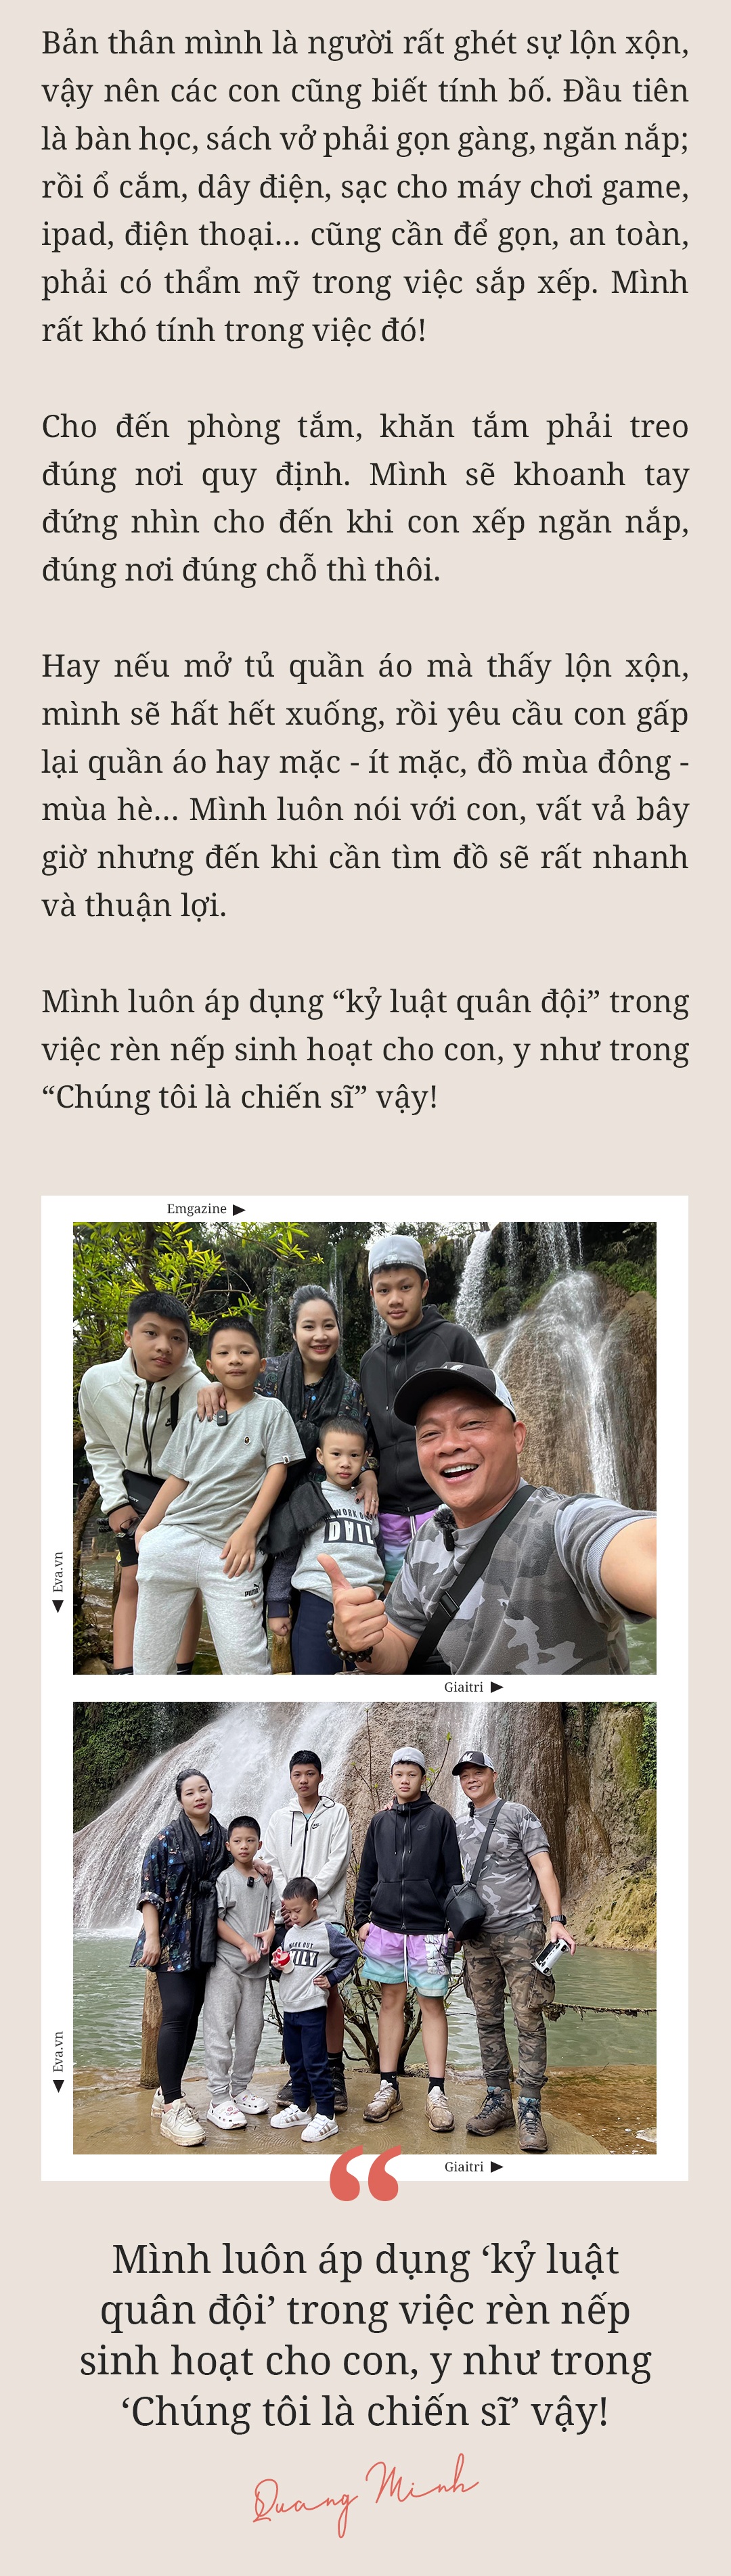 MC Trần Quang Minh: amp;#34;Nếu mừng tuổi ít, các con thấy buồn một thì mình tủi thân mườiamp;#34; - 28